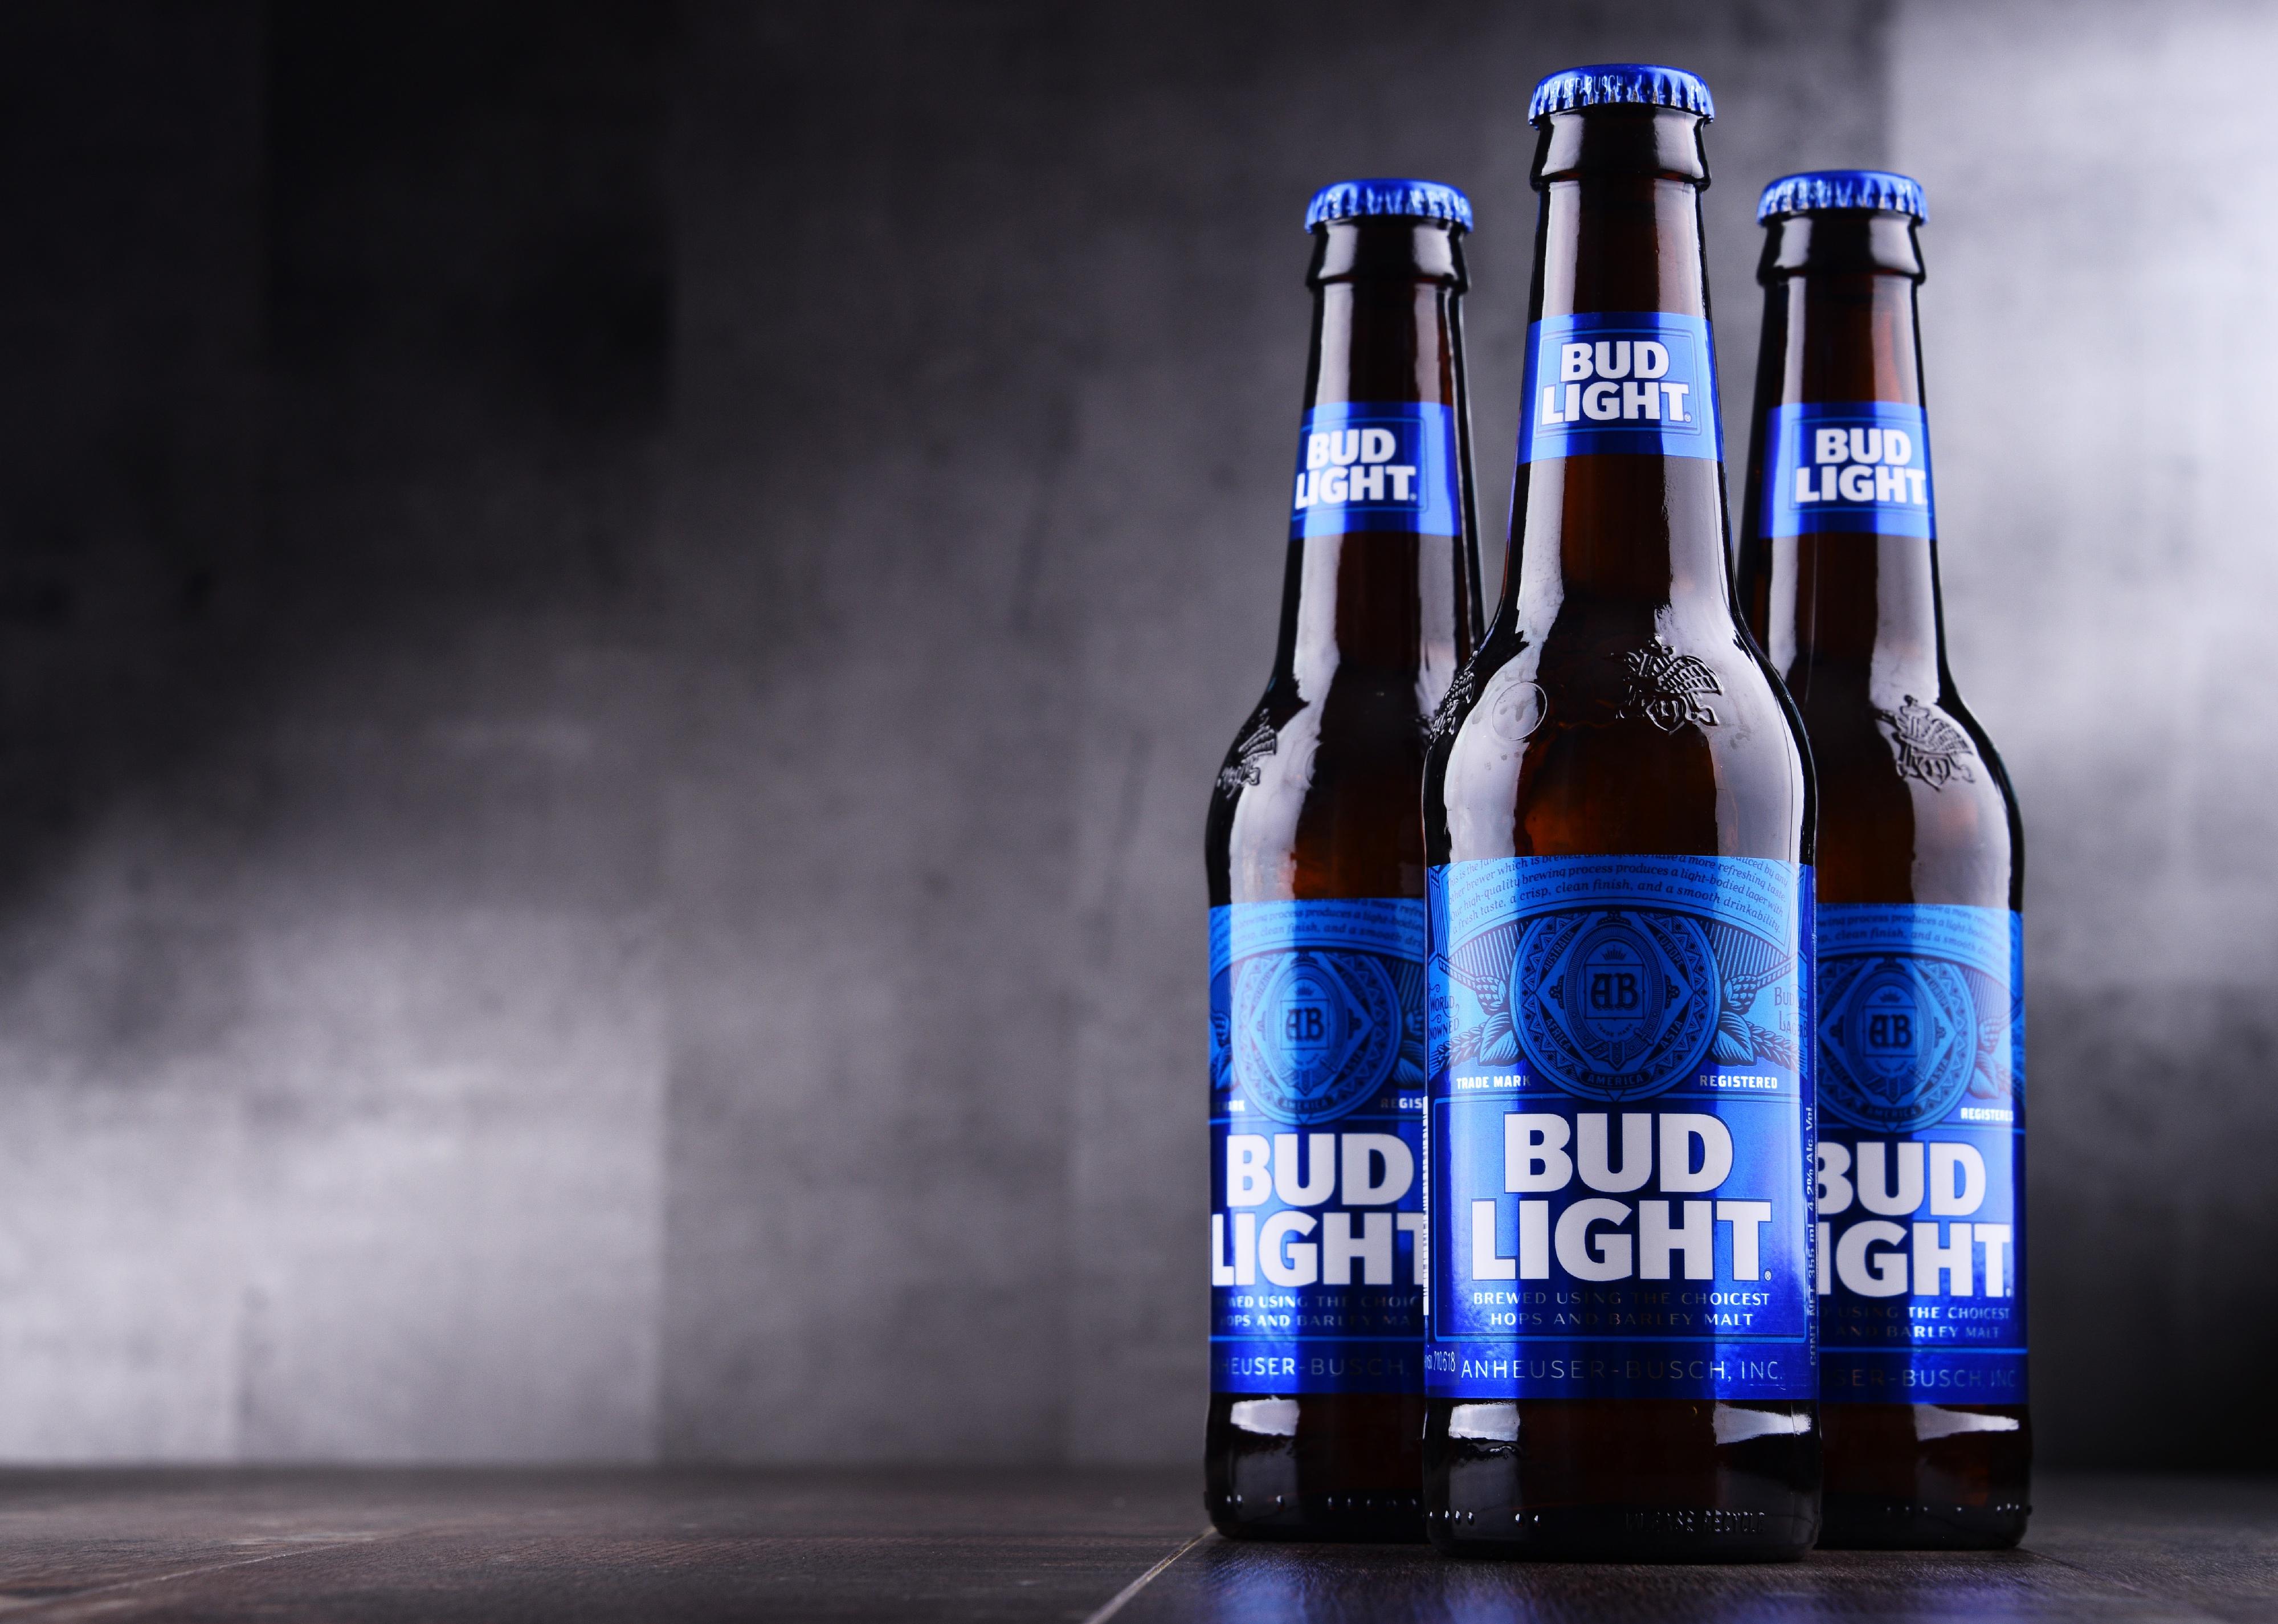 Bottles of Bud Light beer